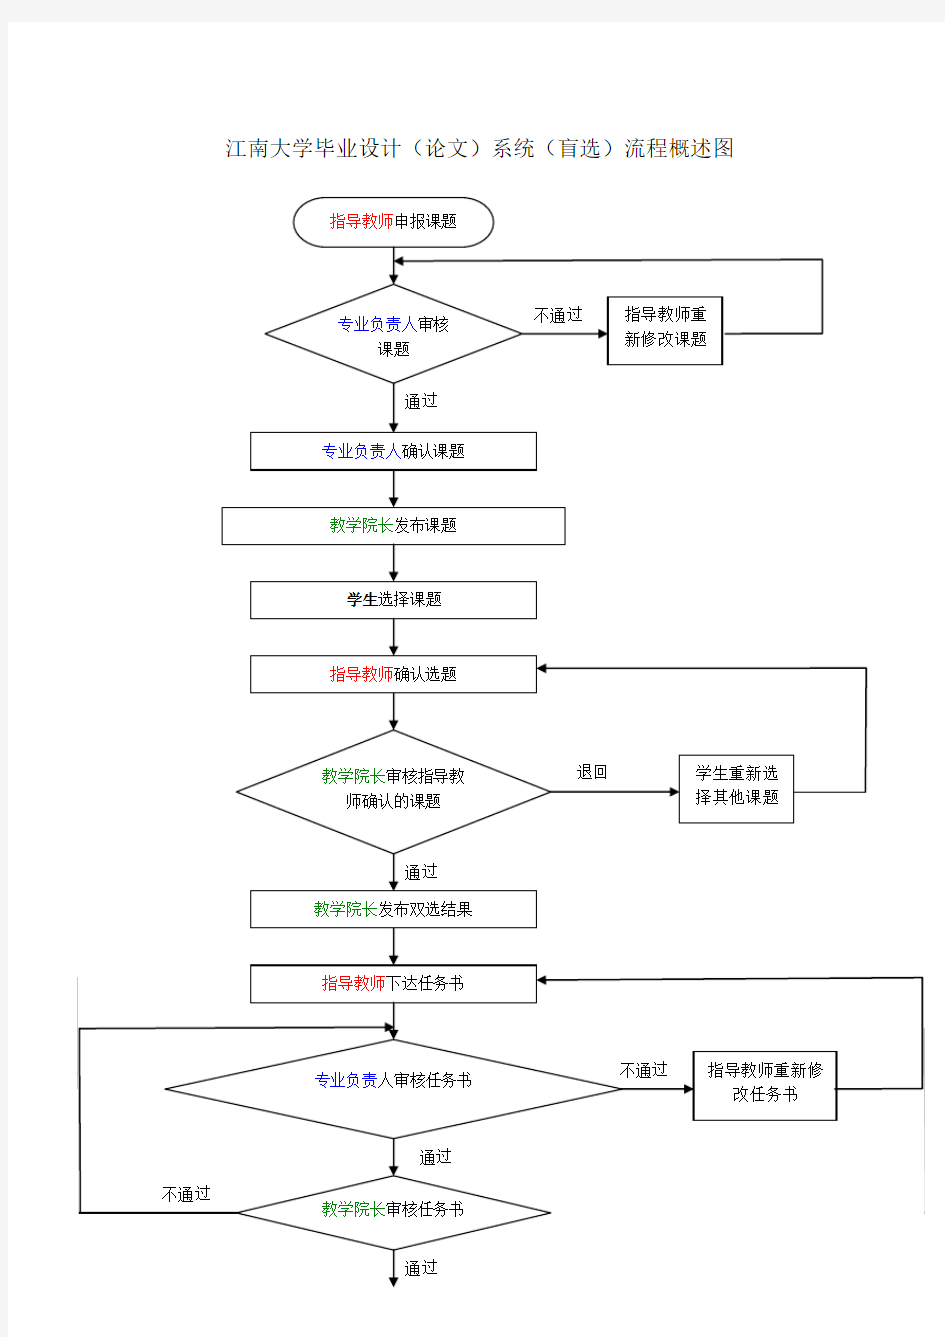 江南大学毕业设计(论文)系统(盲选)流程概述图